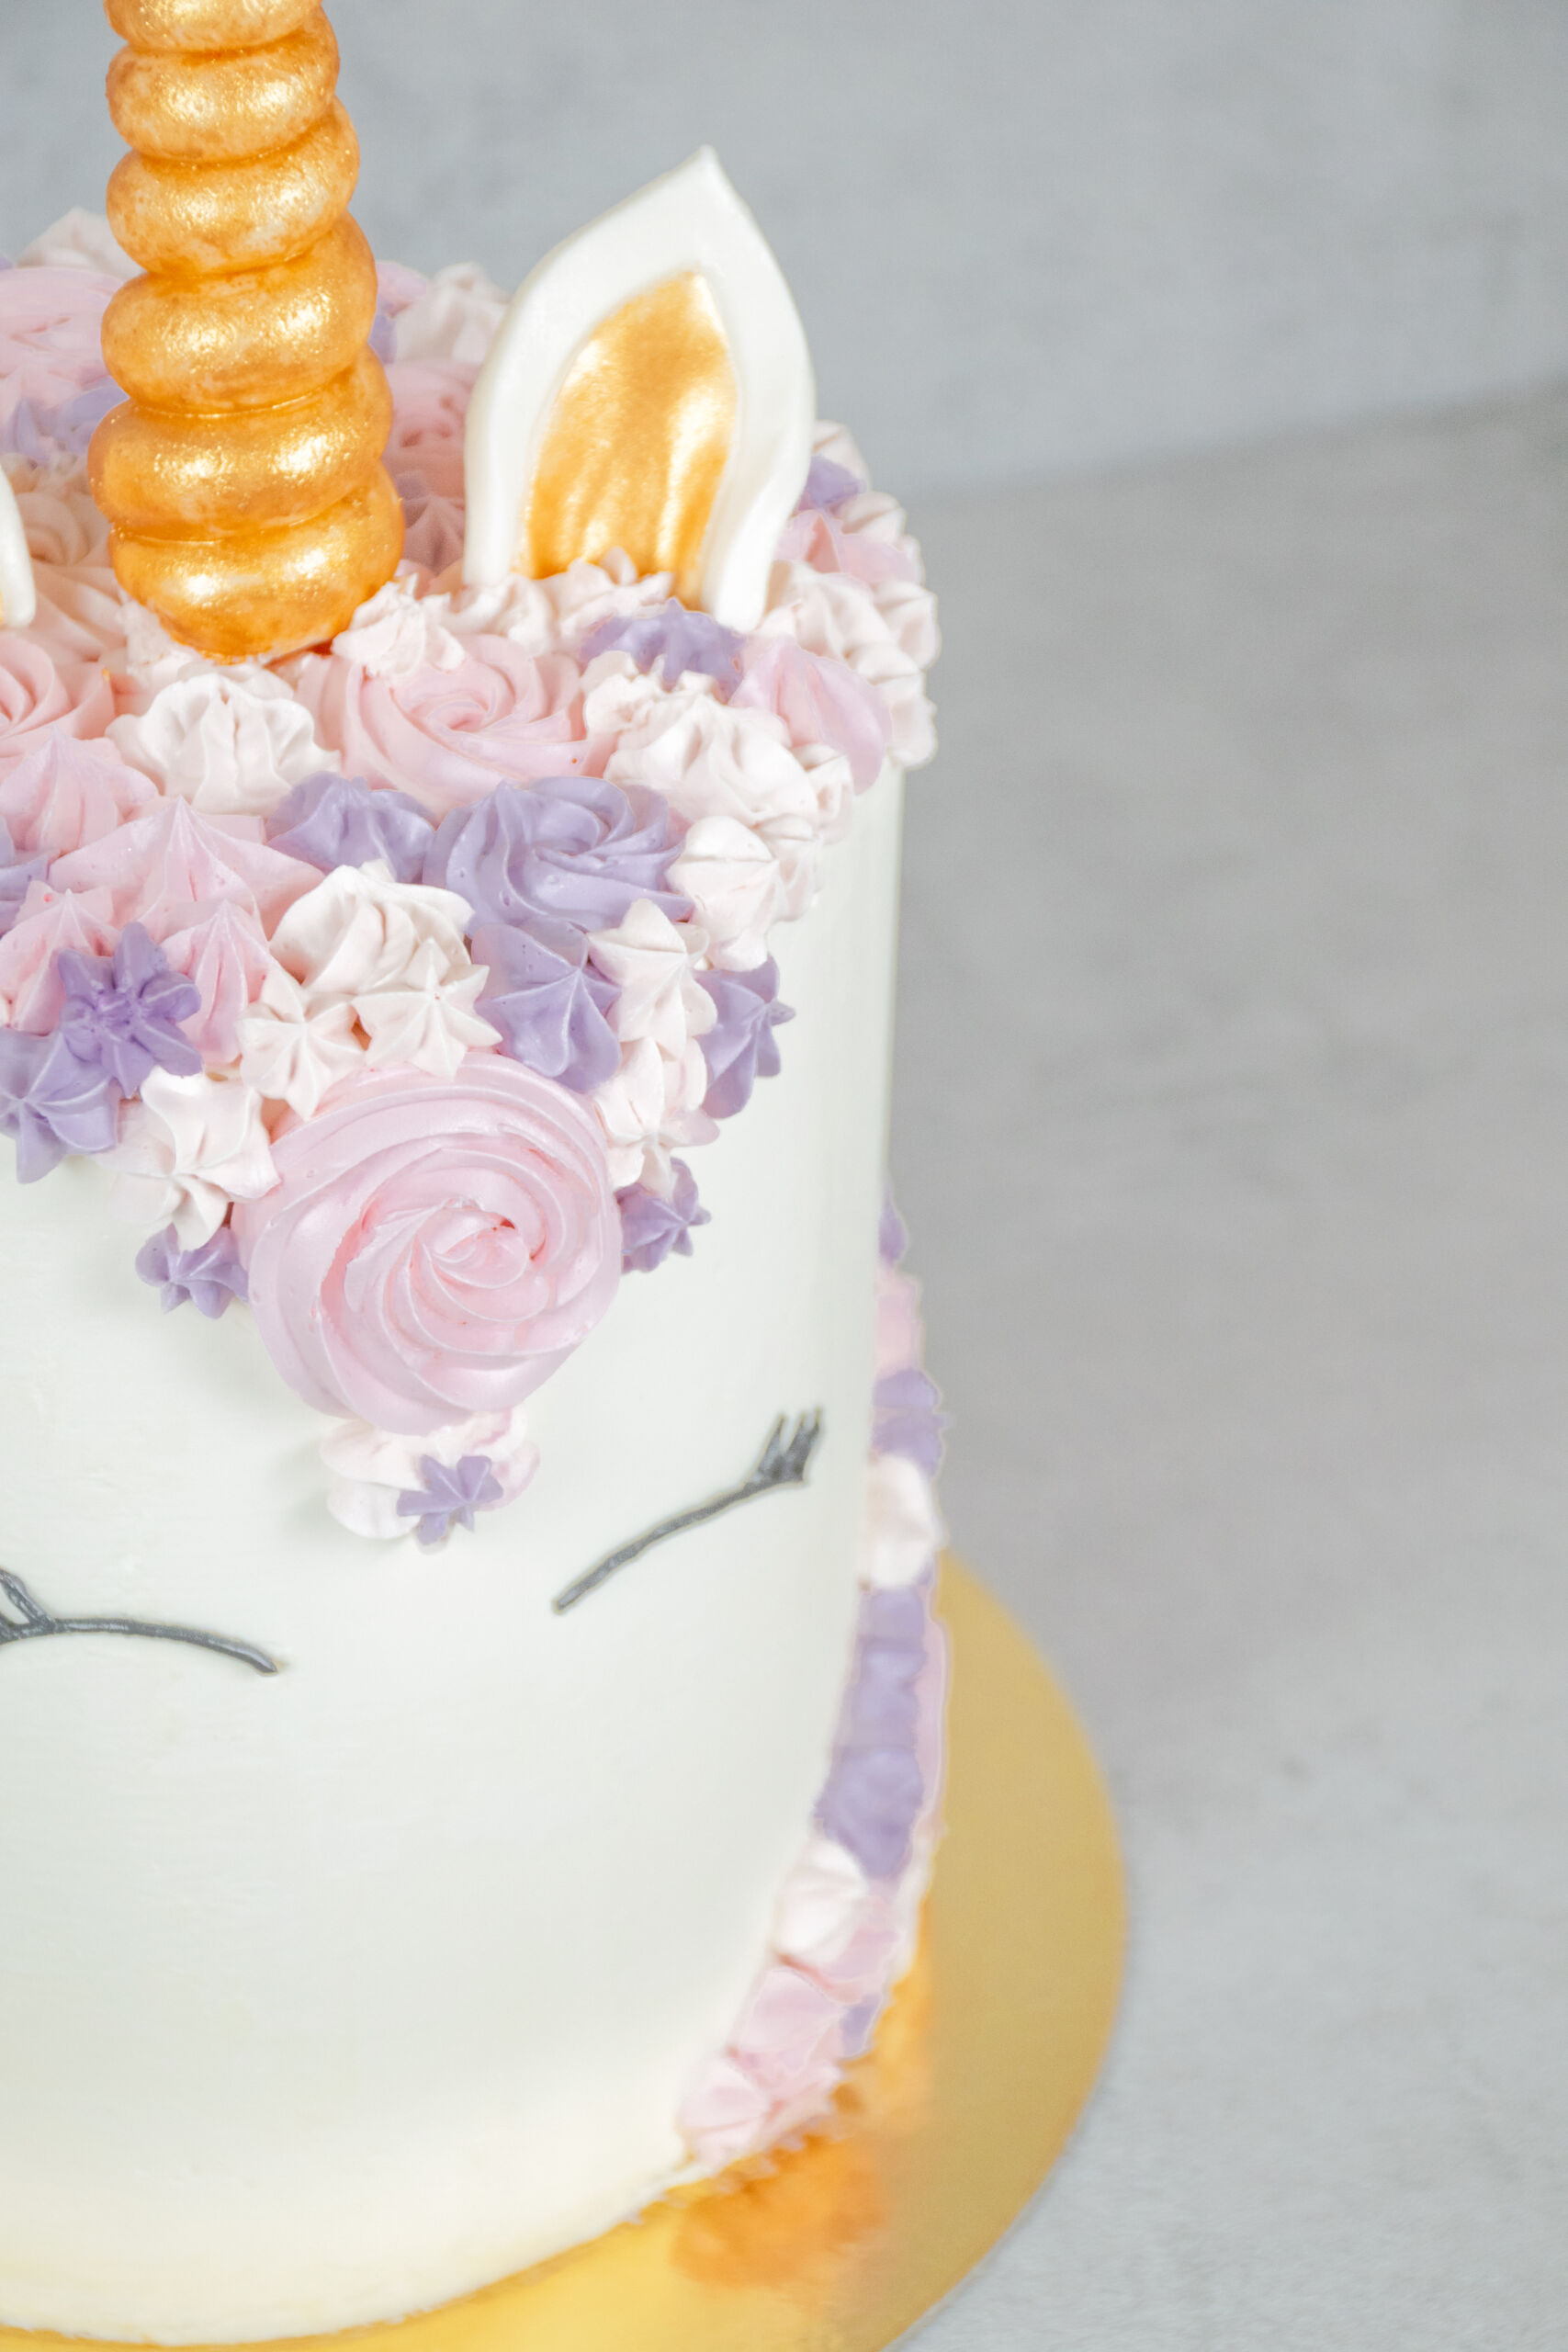 gâteau licorne personnalisé anniversaire